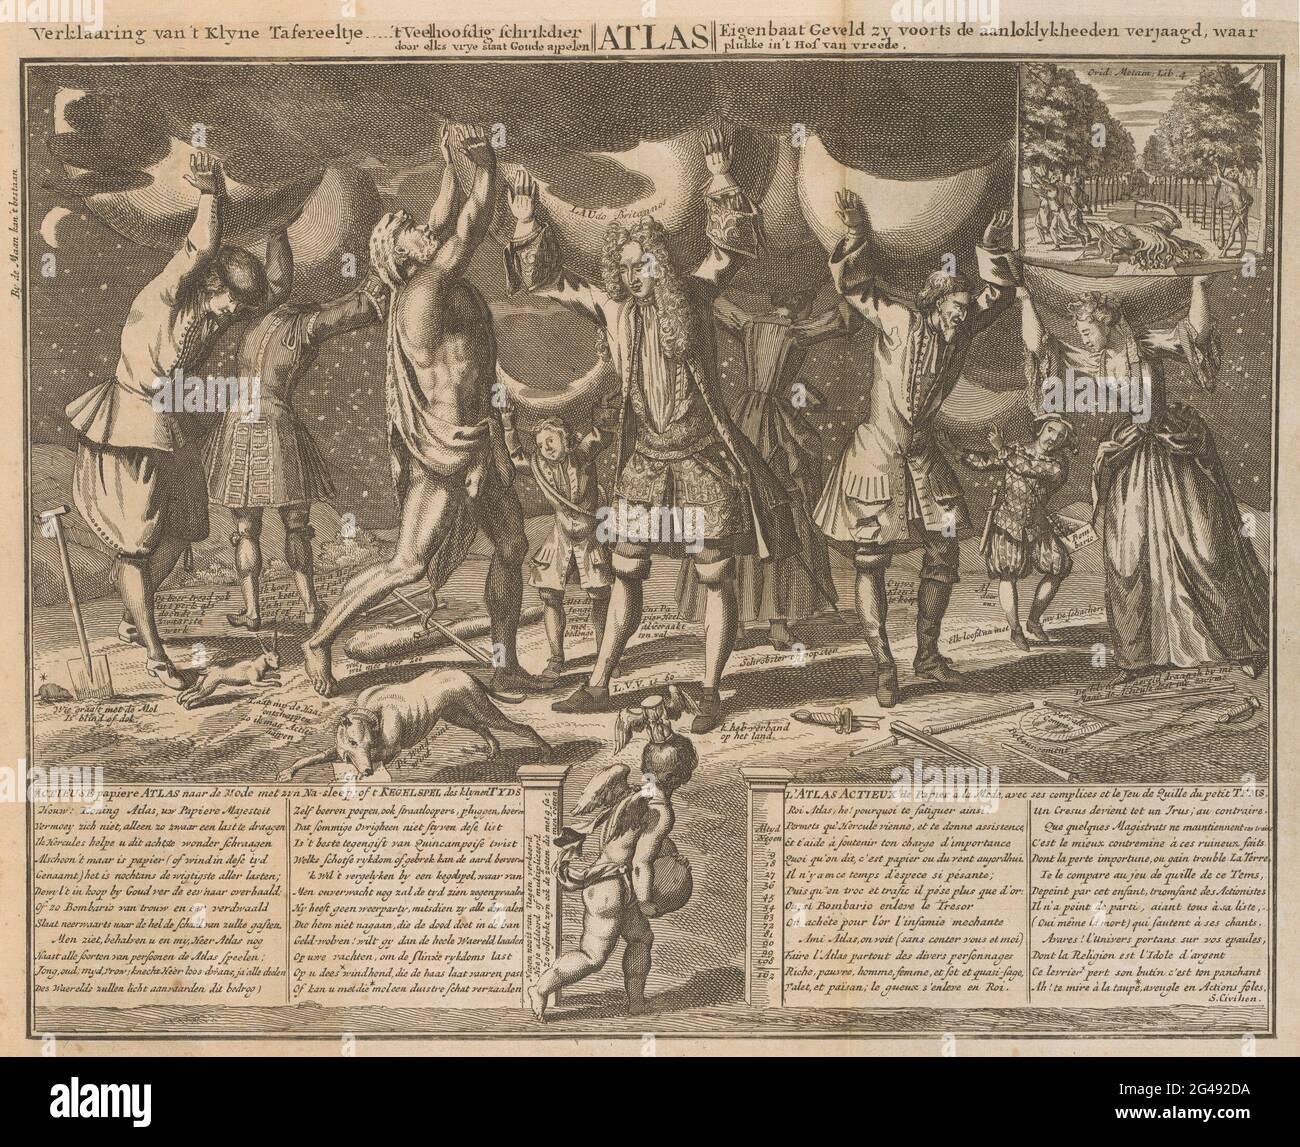 John Law y otros atorming sus deudas en sus hombros, 1720; Actionuse papel  atlas a la moda con su después de pista; o t juego de hueso des  Klelynentypds / l'Atlas Actieux